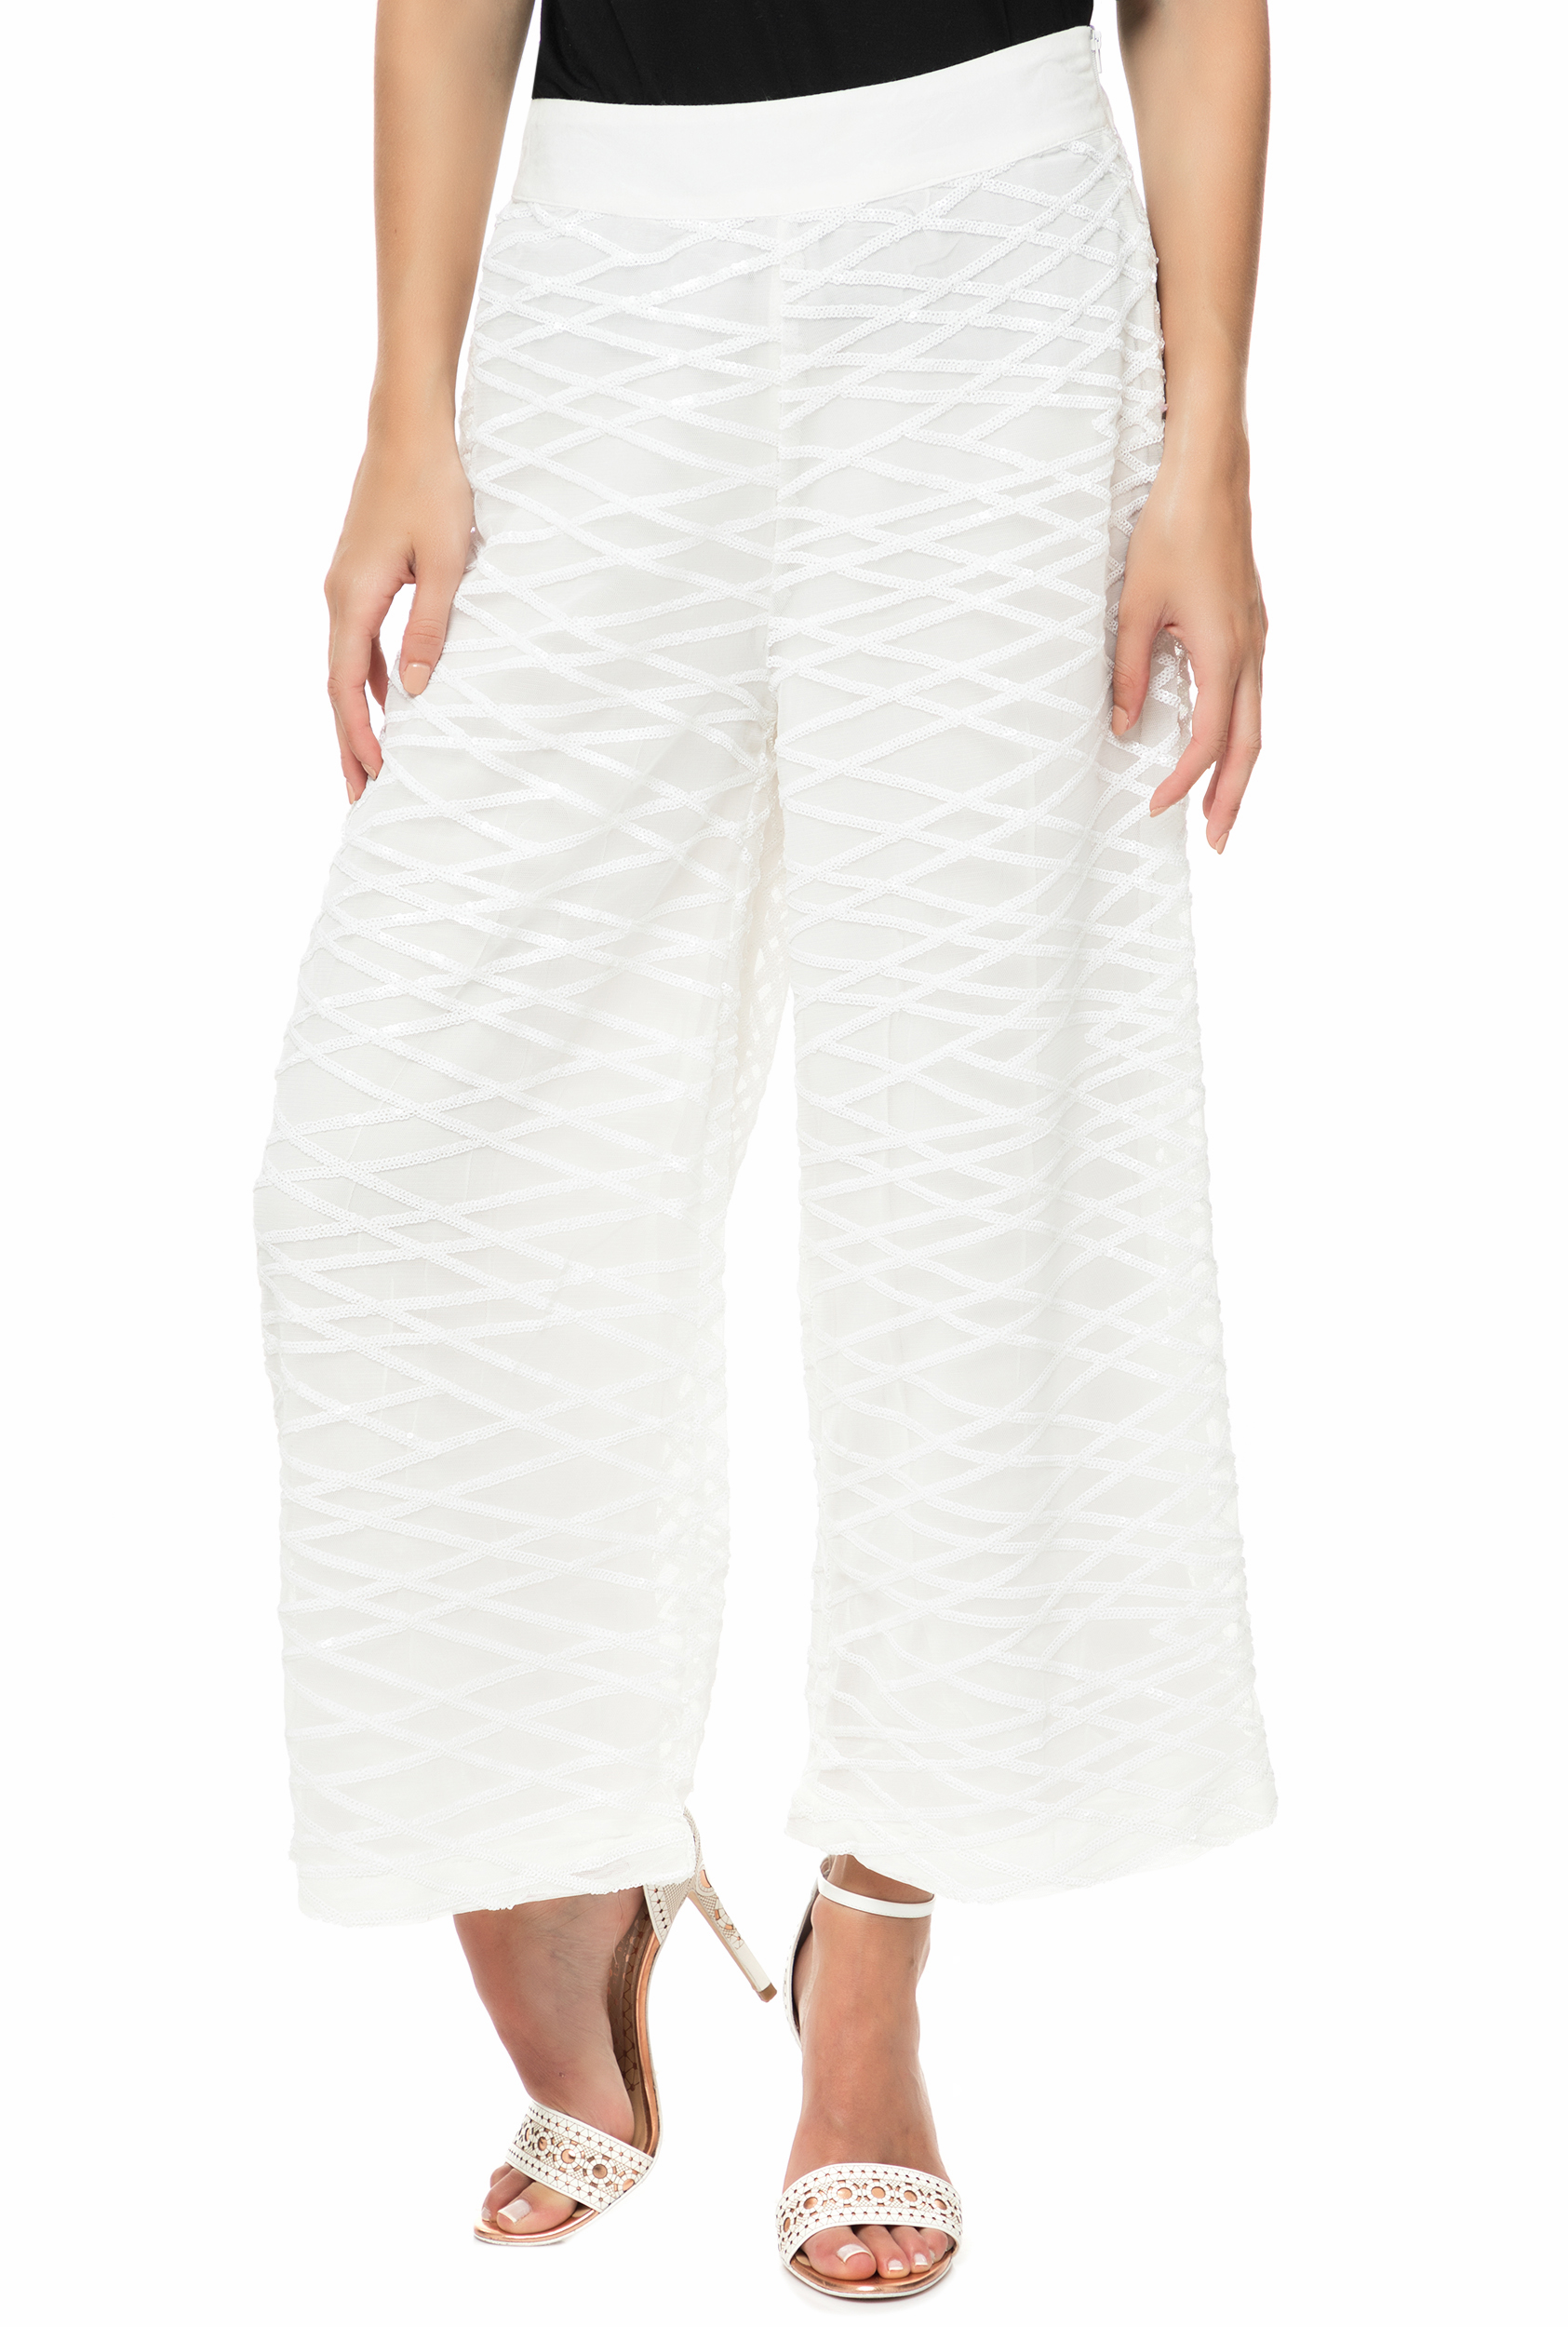 Γυναικεία/Ρούχα/Παντελόνια/Παντελόνες RELIGION - Γυναικεία παντελόνα PULSE λευκή